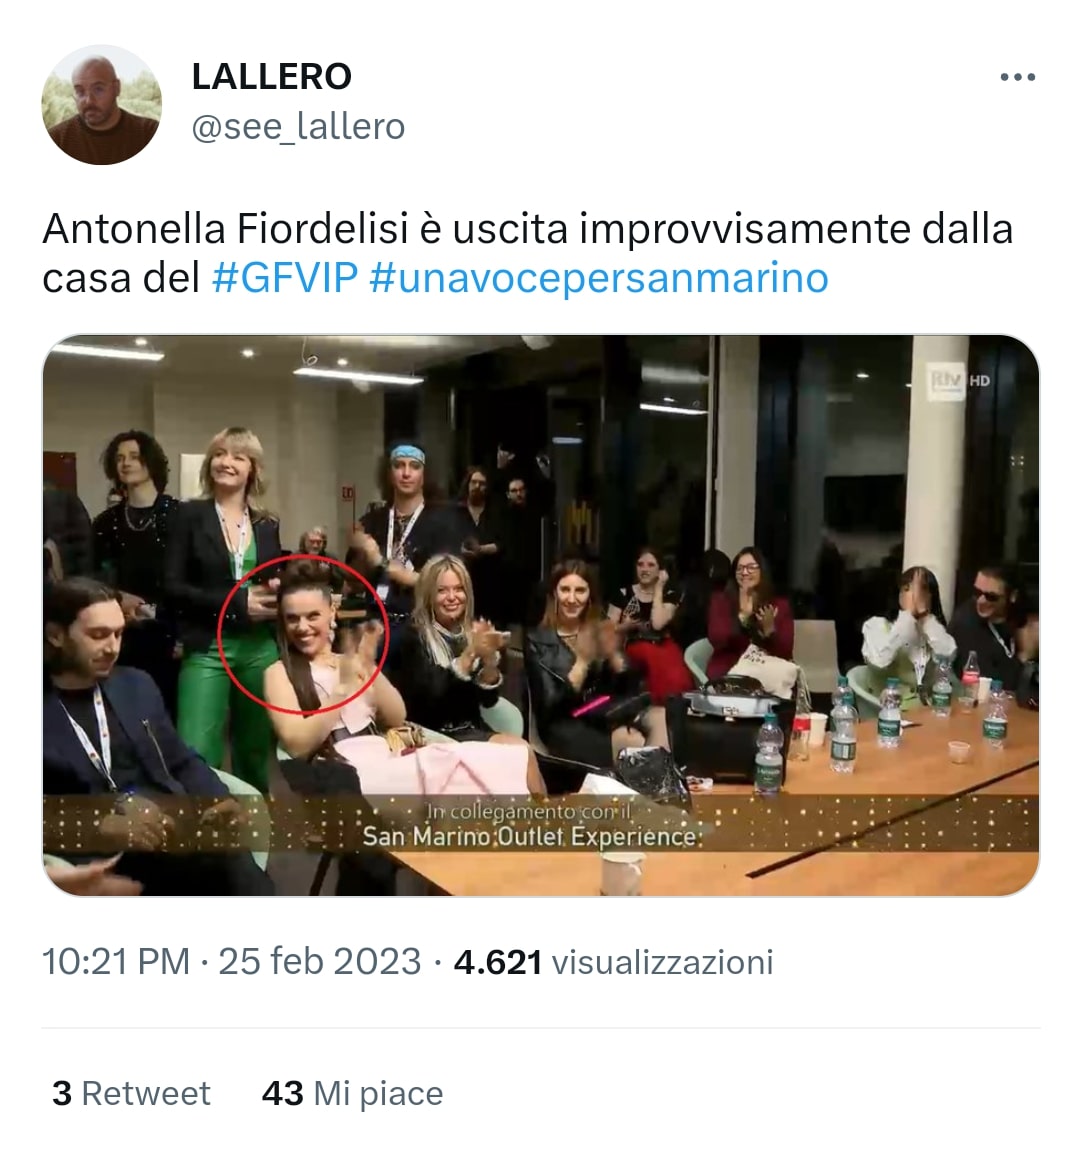 La sosia di Antonella Fiordelisi era tra i giurati di Una Voce di San Marino